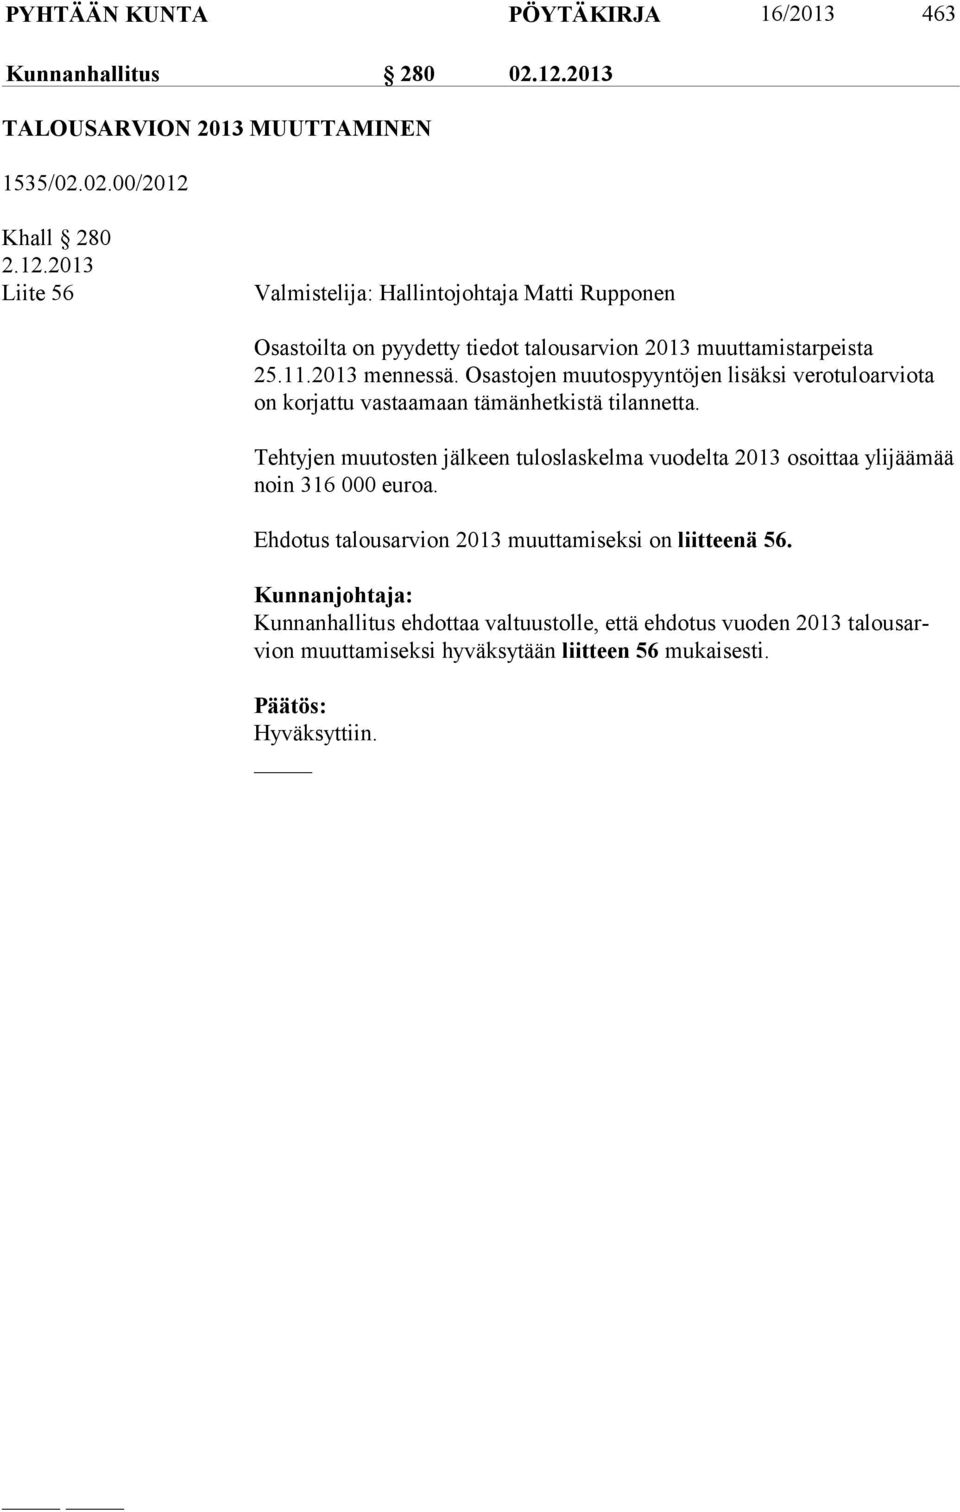 Khall 280 2.12.2013 Liite 56 Valmistelija: Hallintojohtaja Matti Rupponen Osastoilta on pyydetty tiedot talousarvion 2013 muuttamistarpeista 25.11.2013 mennessä.